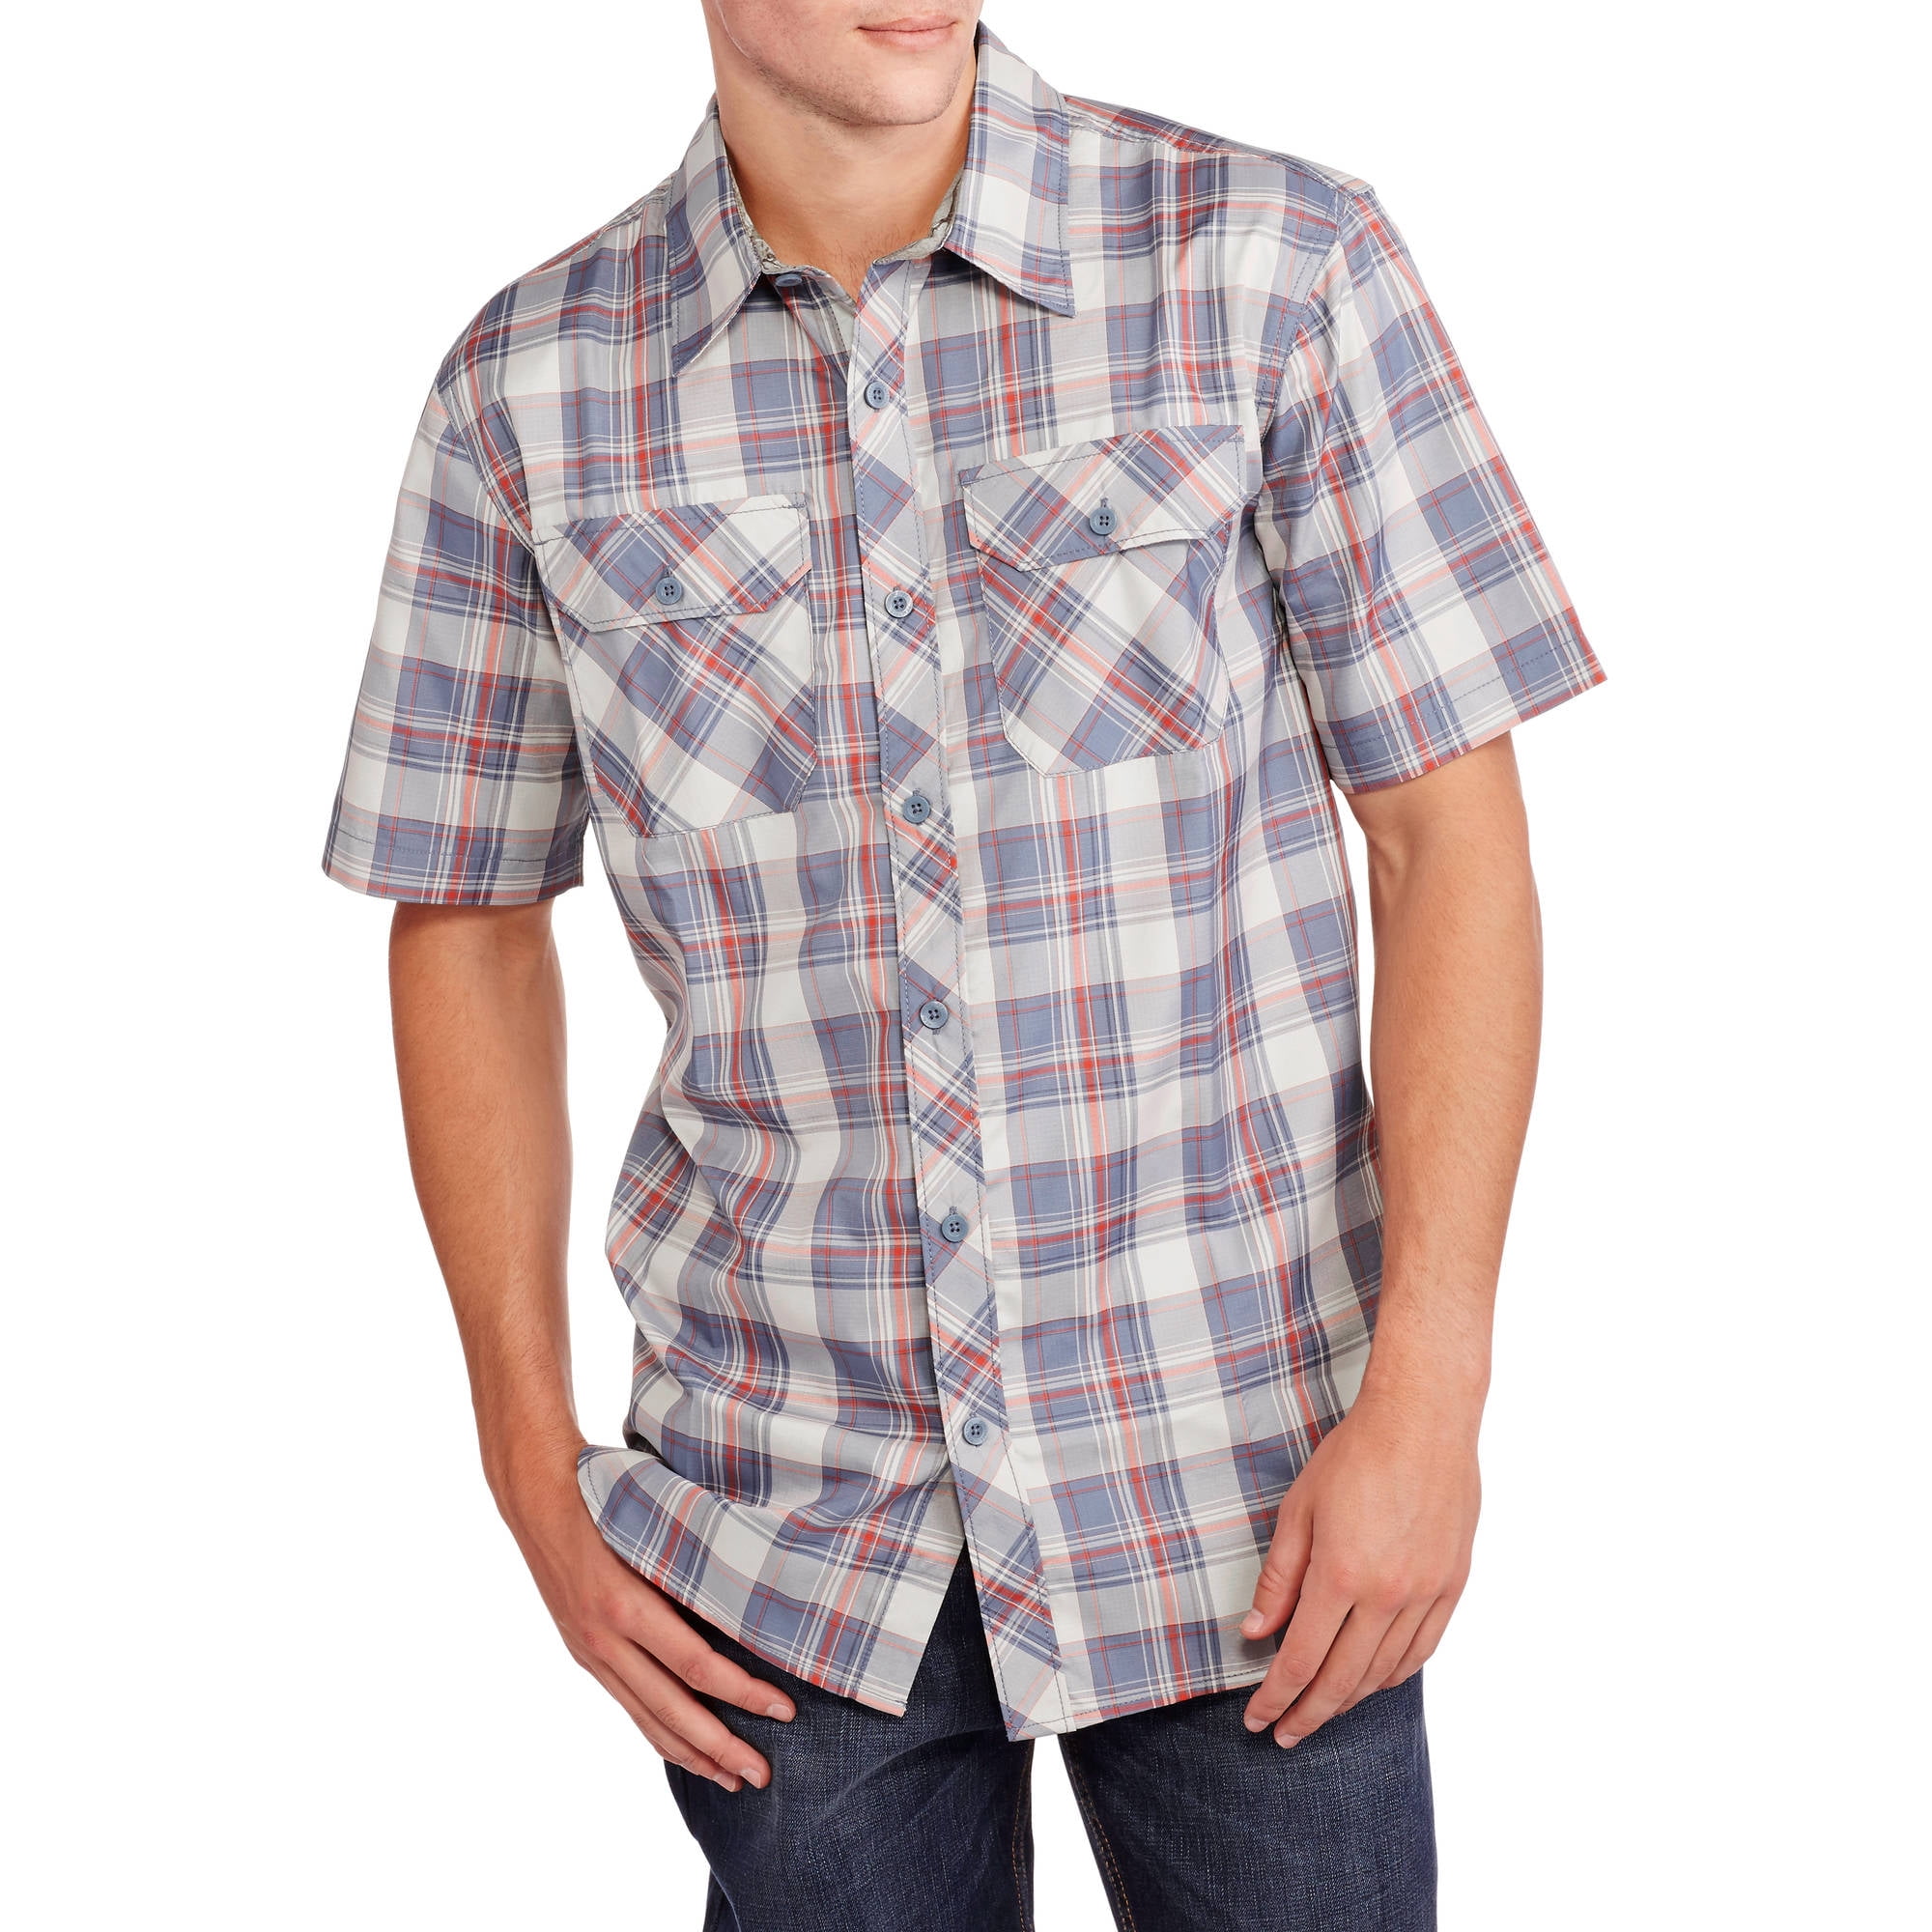 Men's Performance Short Sleeve Woven Shirt - Walmart.com